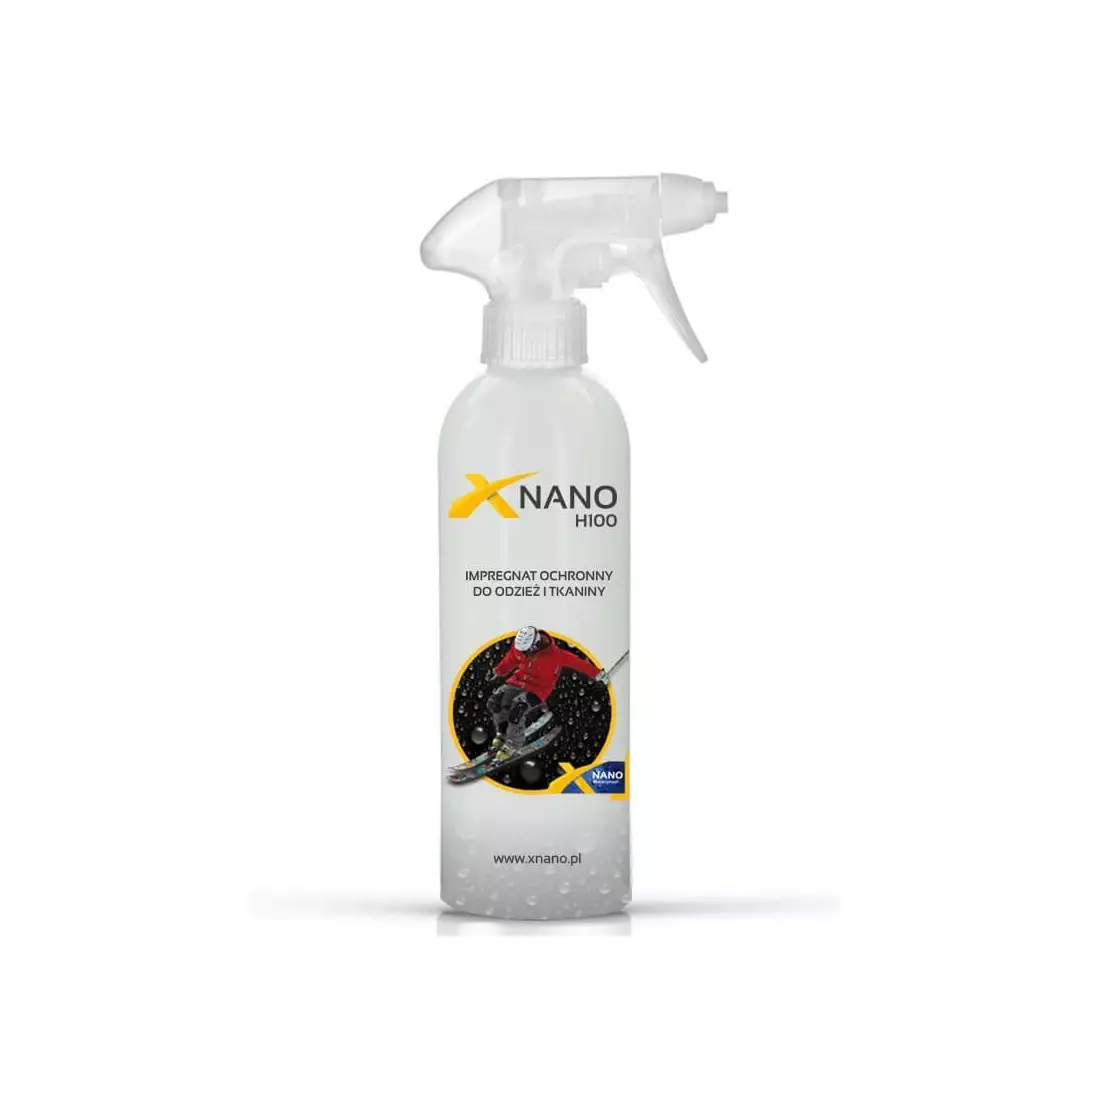 NANOBIZ - XNANO - H100 Impregnare de protecție pentru îmbrăcăminte și țesături, capacitate: 250 ml